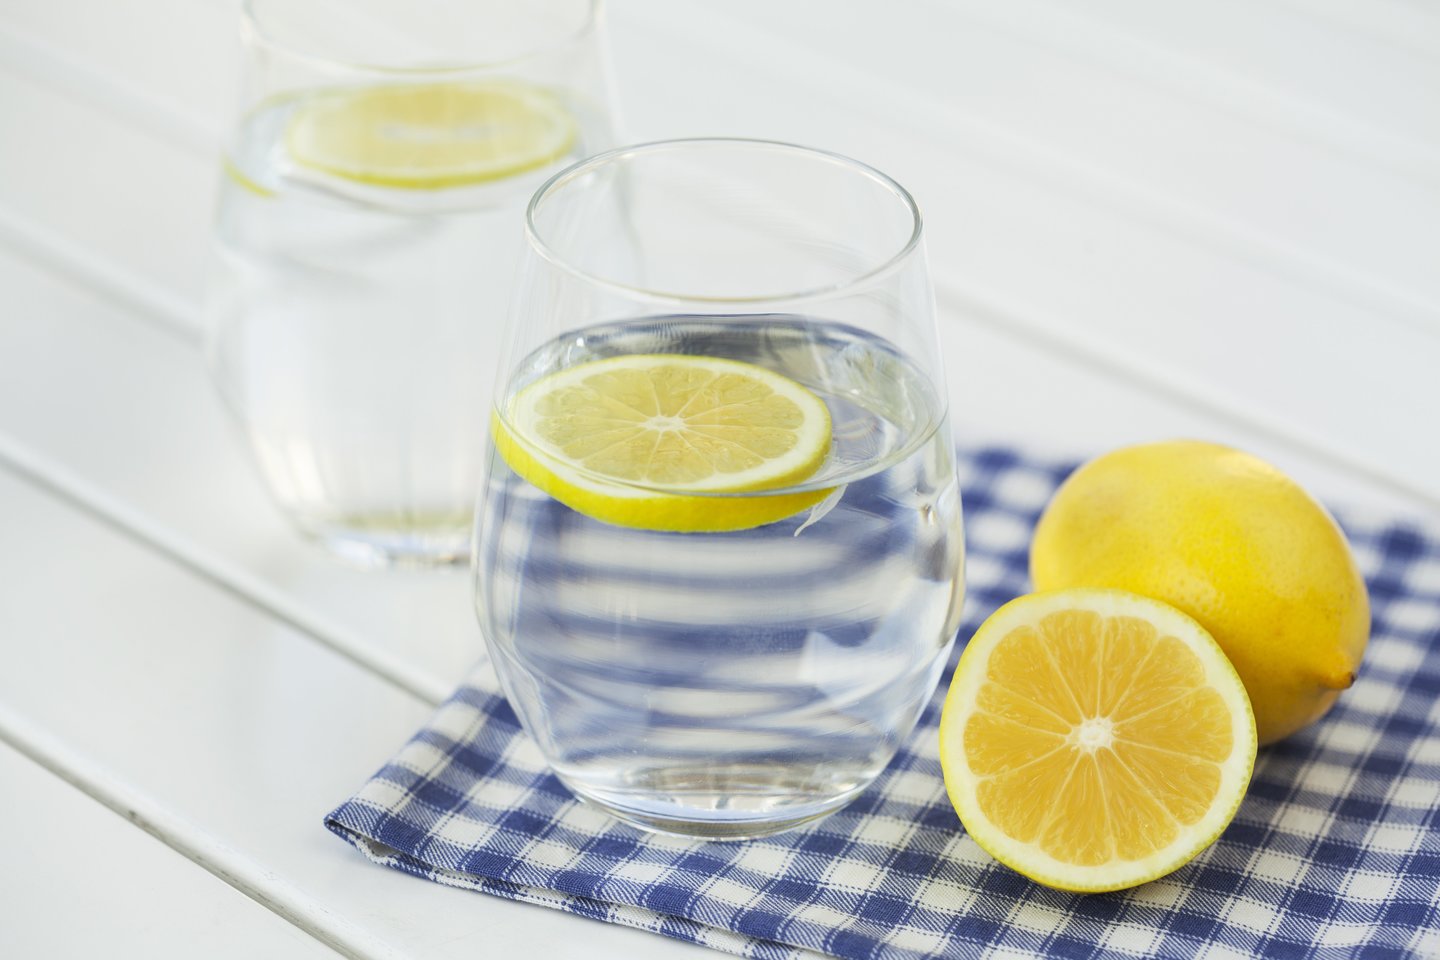 Ne vienas žmogus rytą pradeda nuo stiklinės vandens su citrina.<br>123rf nuotr.